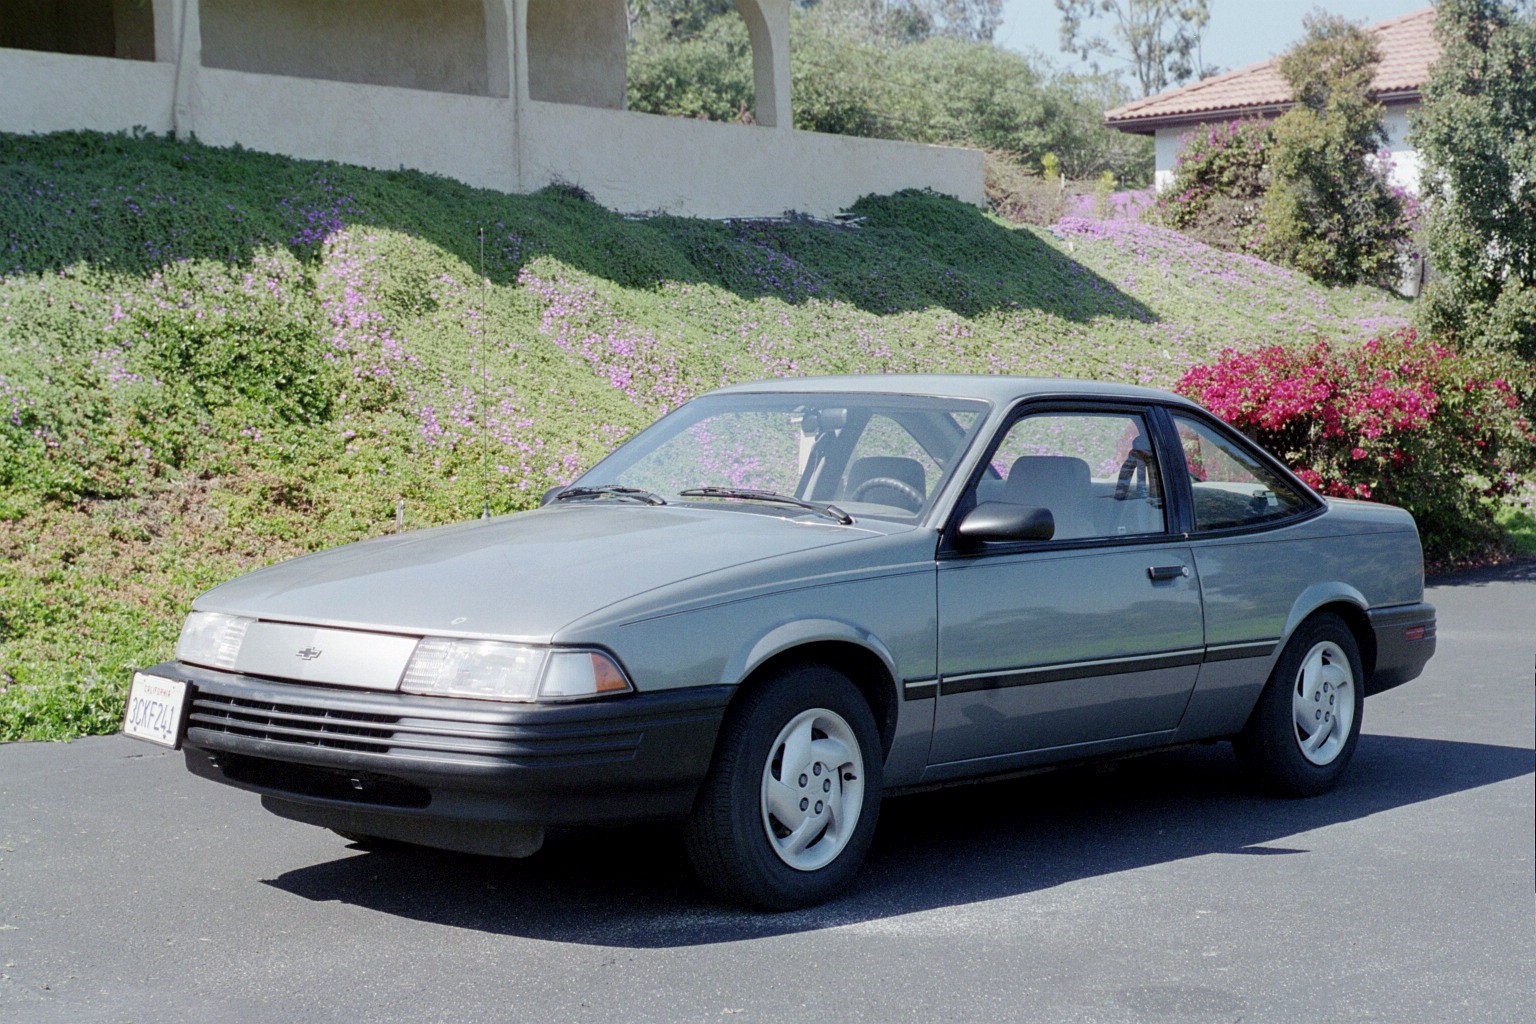 Chevrolet cavalier 1989 photo - 3